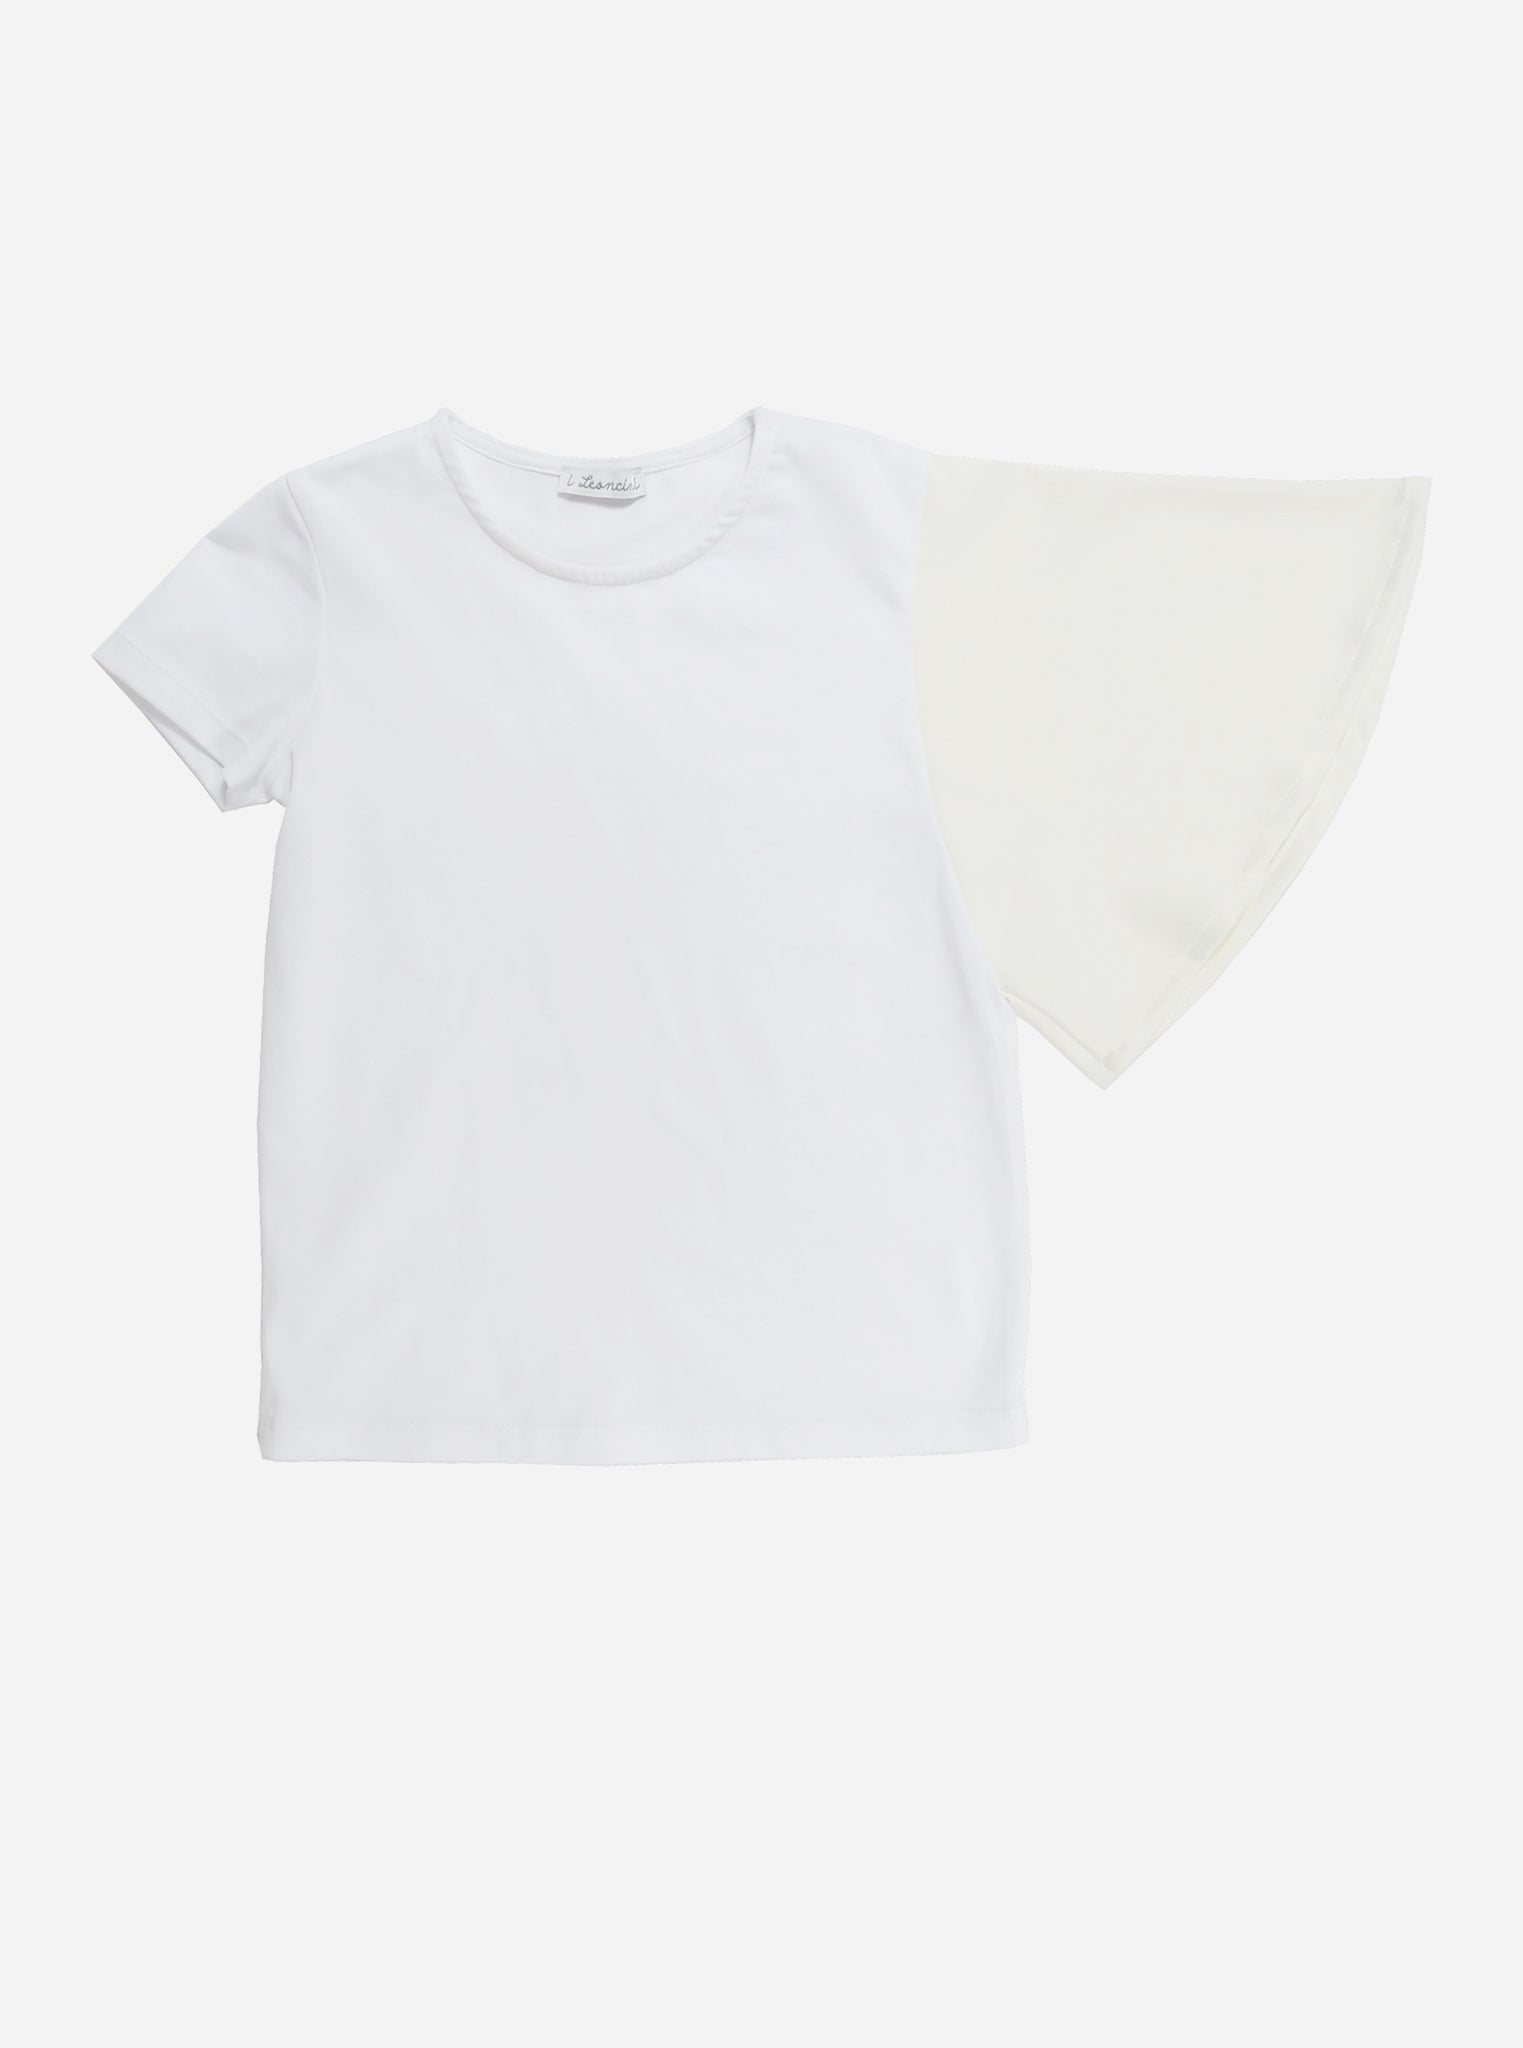 T-shirt BEATRICE-OUTLET T-shirt, Camicie, Top e Canotte-I Leoncini Shop